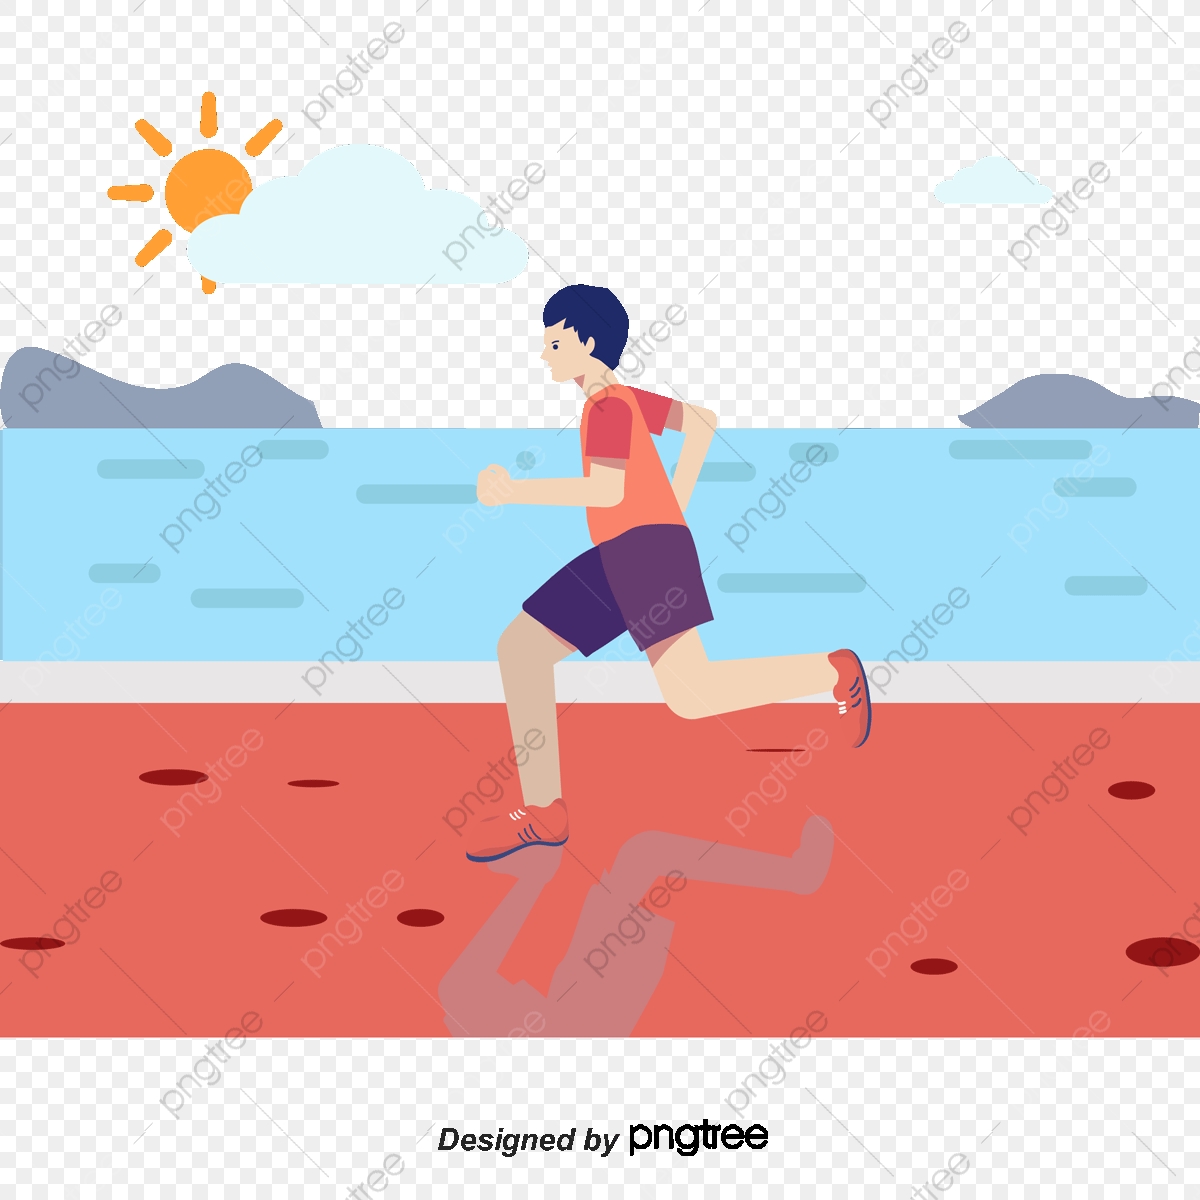 Runner clipart leisure. Running man vector png